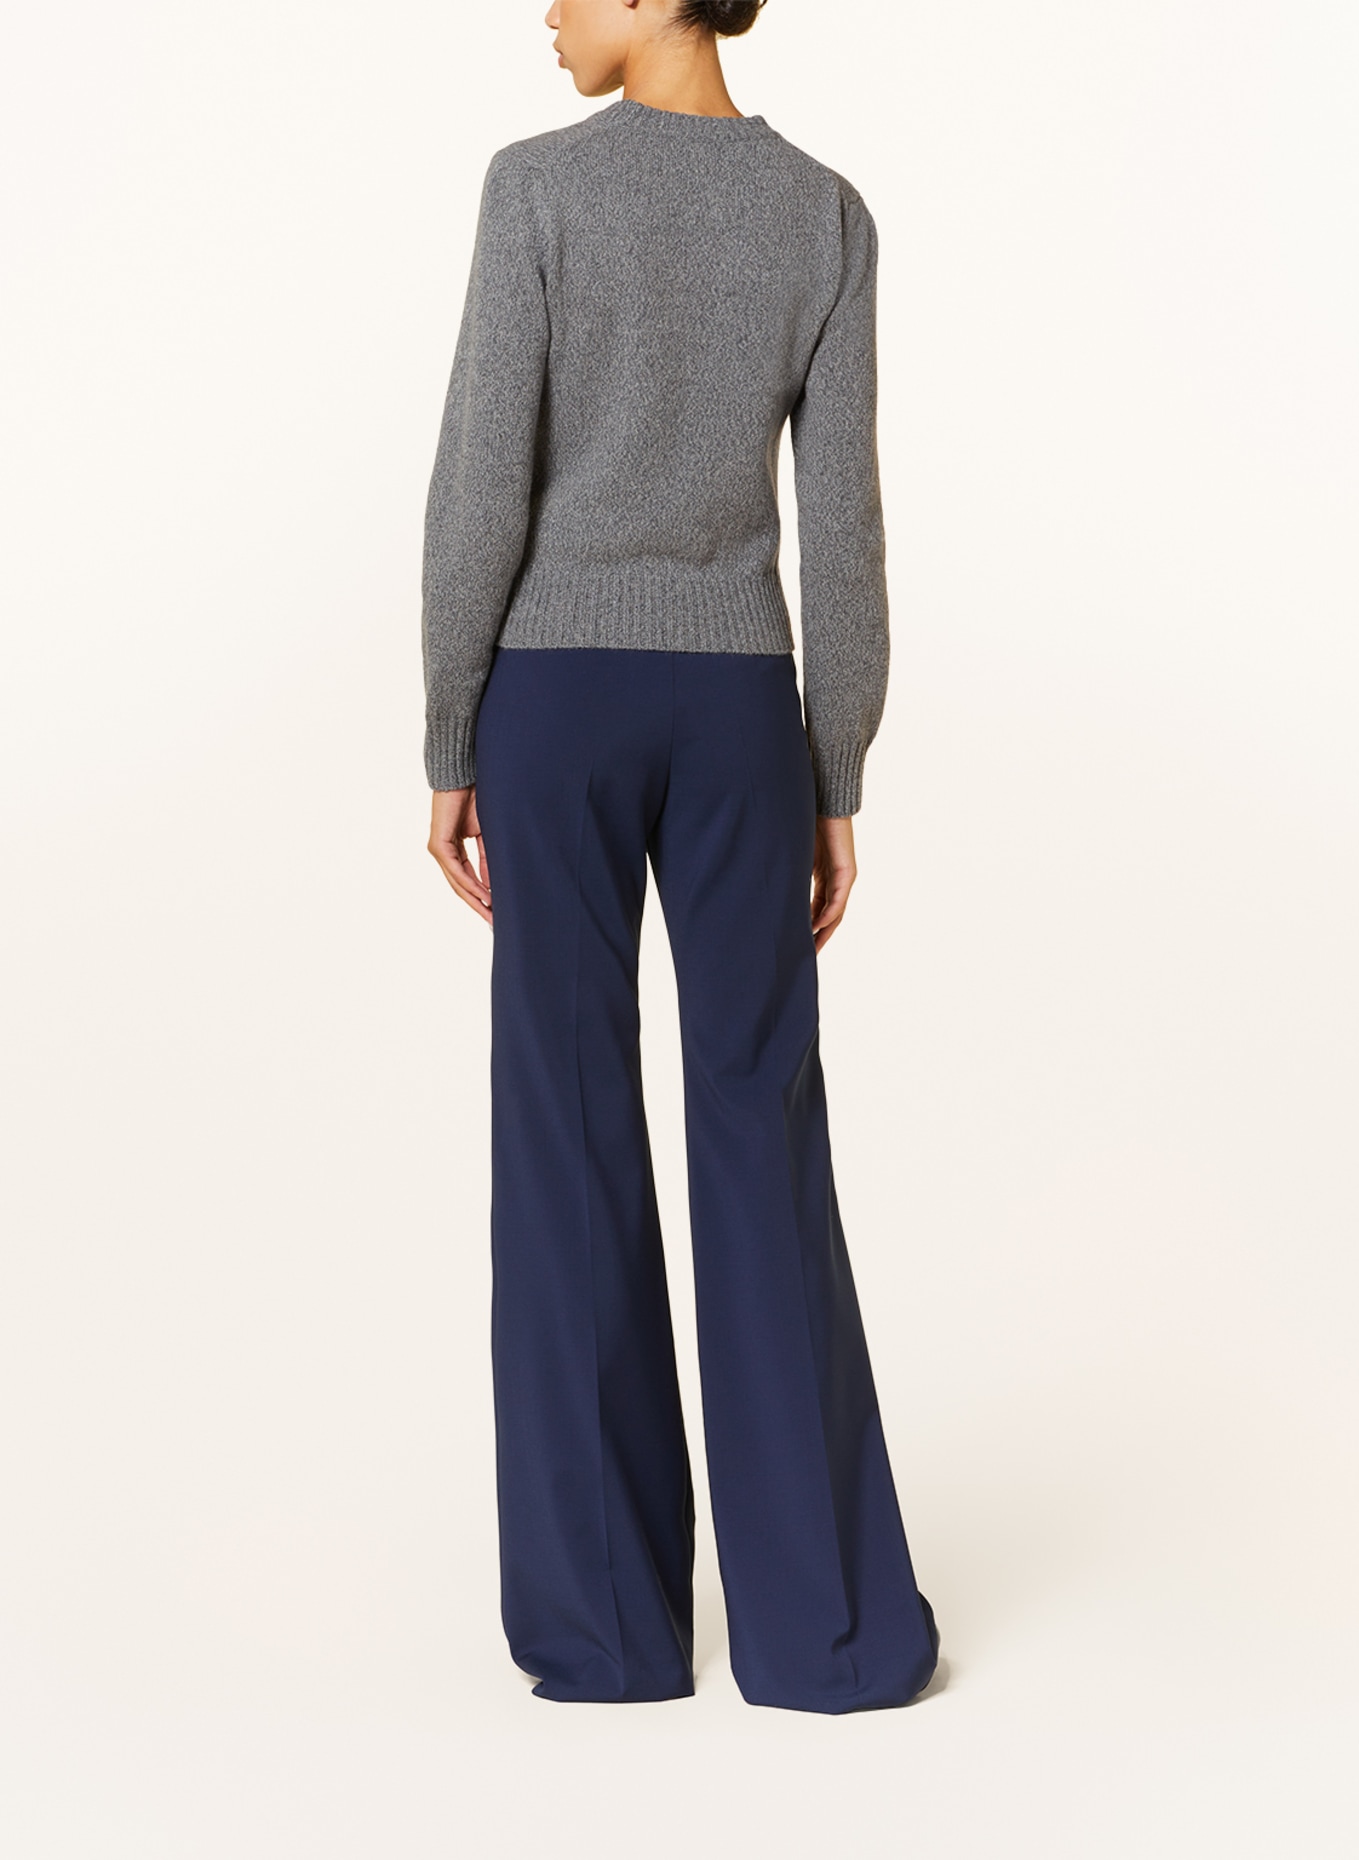 AMI PARIS Cashmere sweater, Color: GRAY (Image 3)